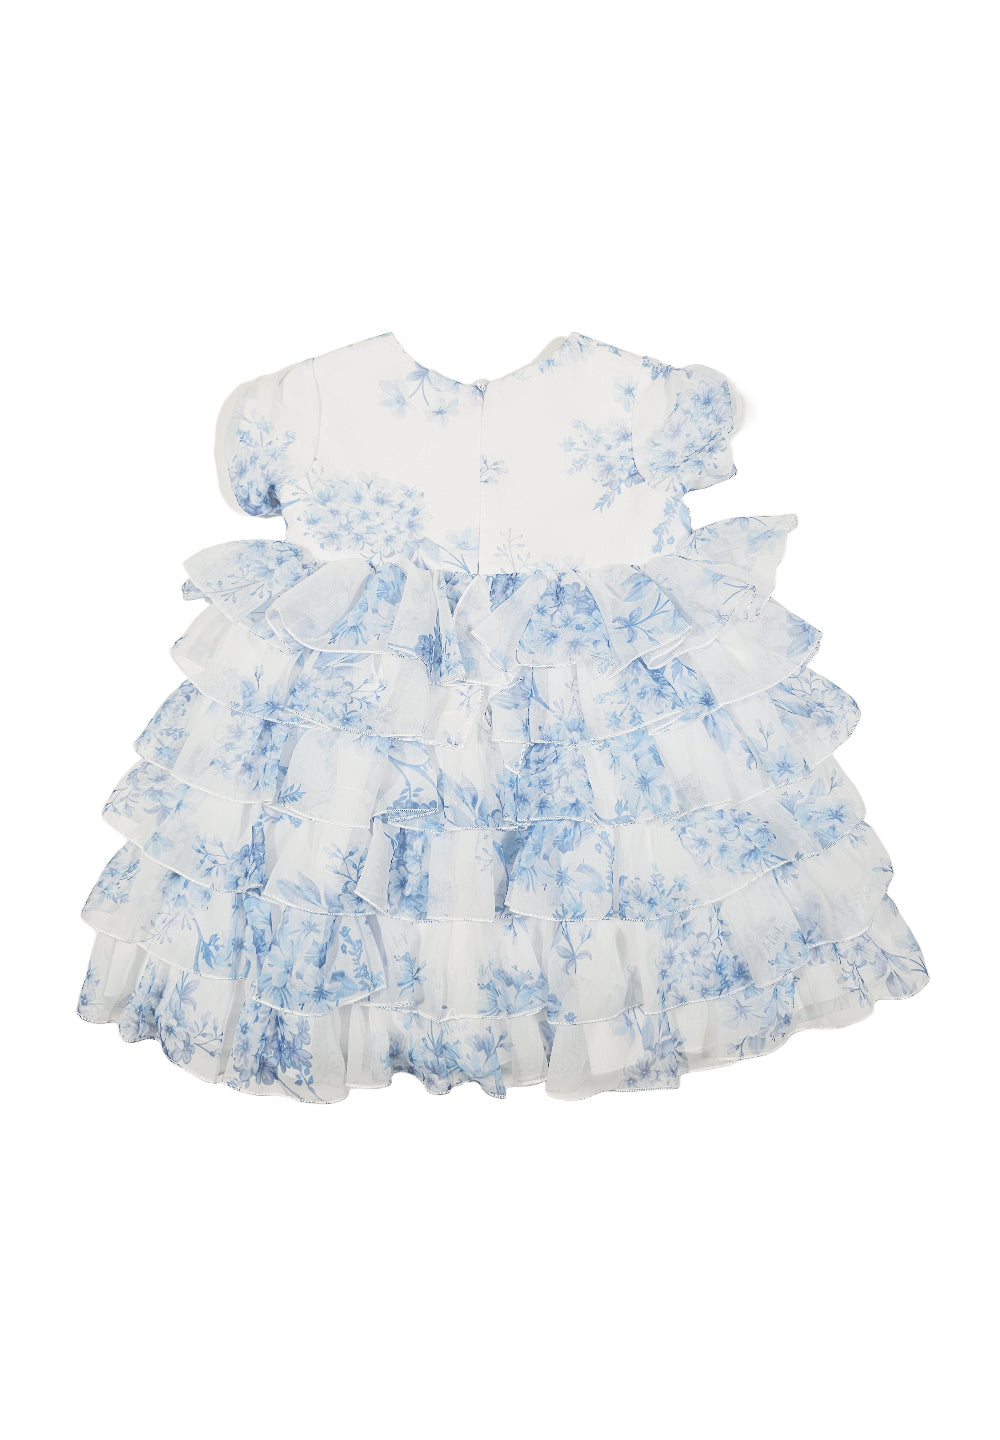 White-light blue dress for girls